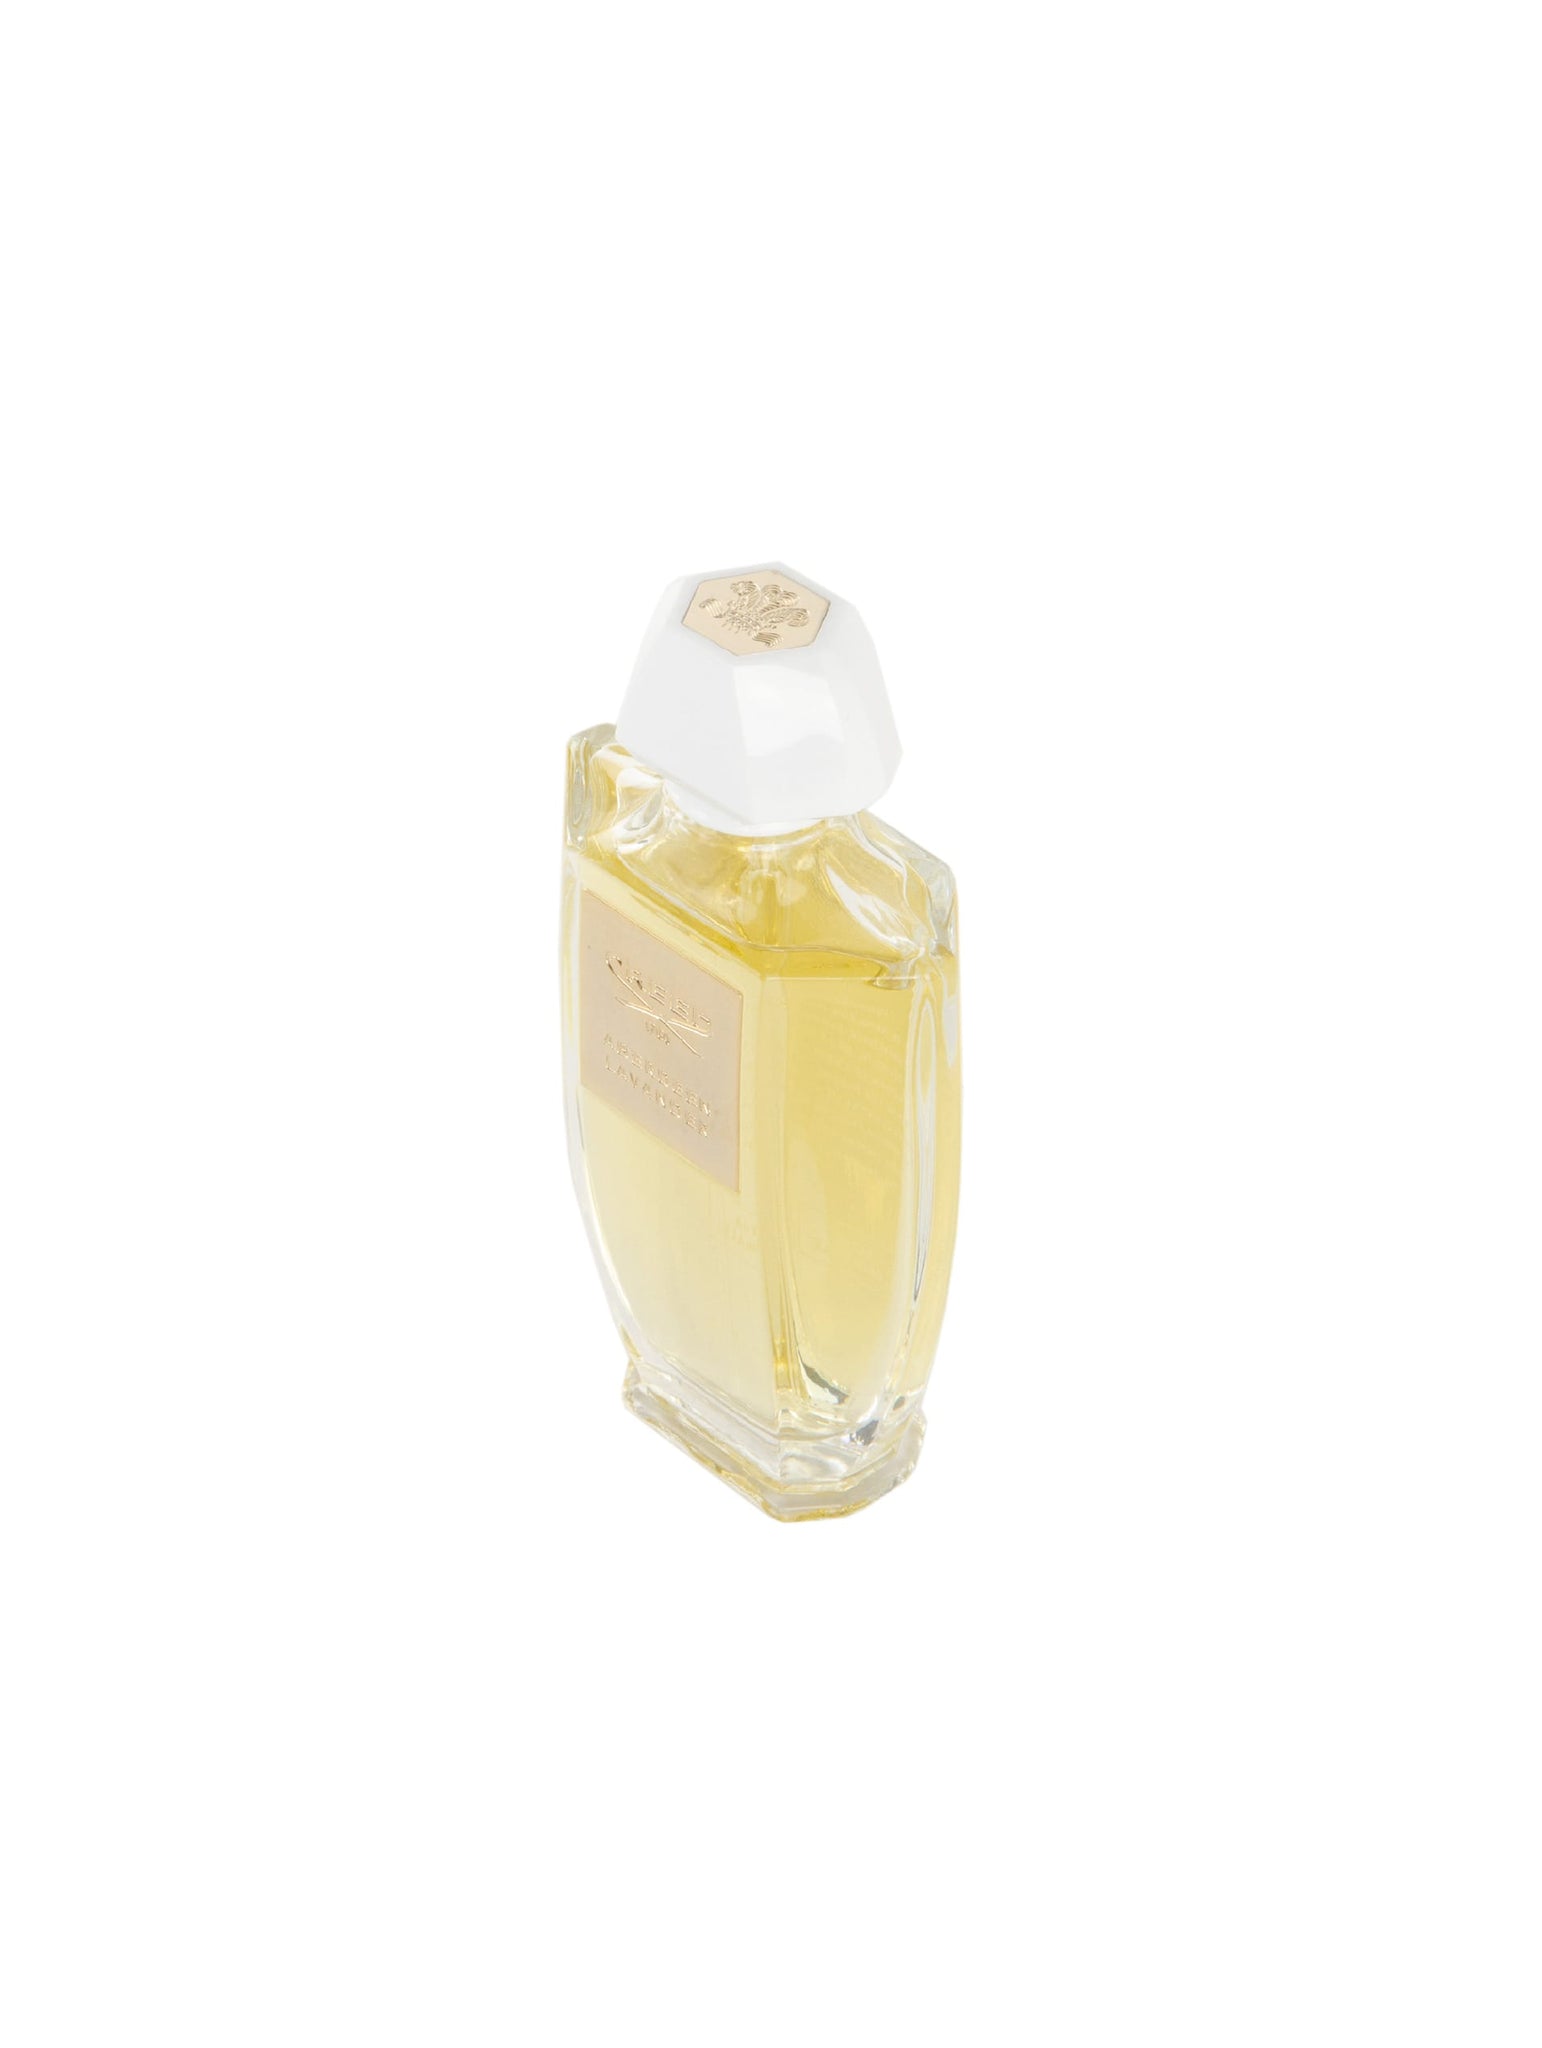 Creed Aberdeen Lavander Original Water Perfume 100 ML